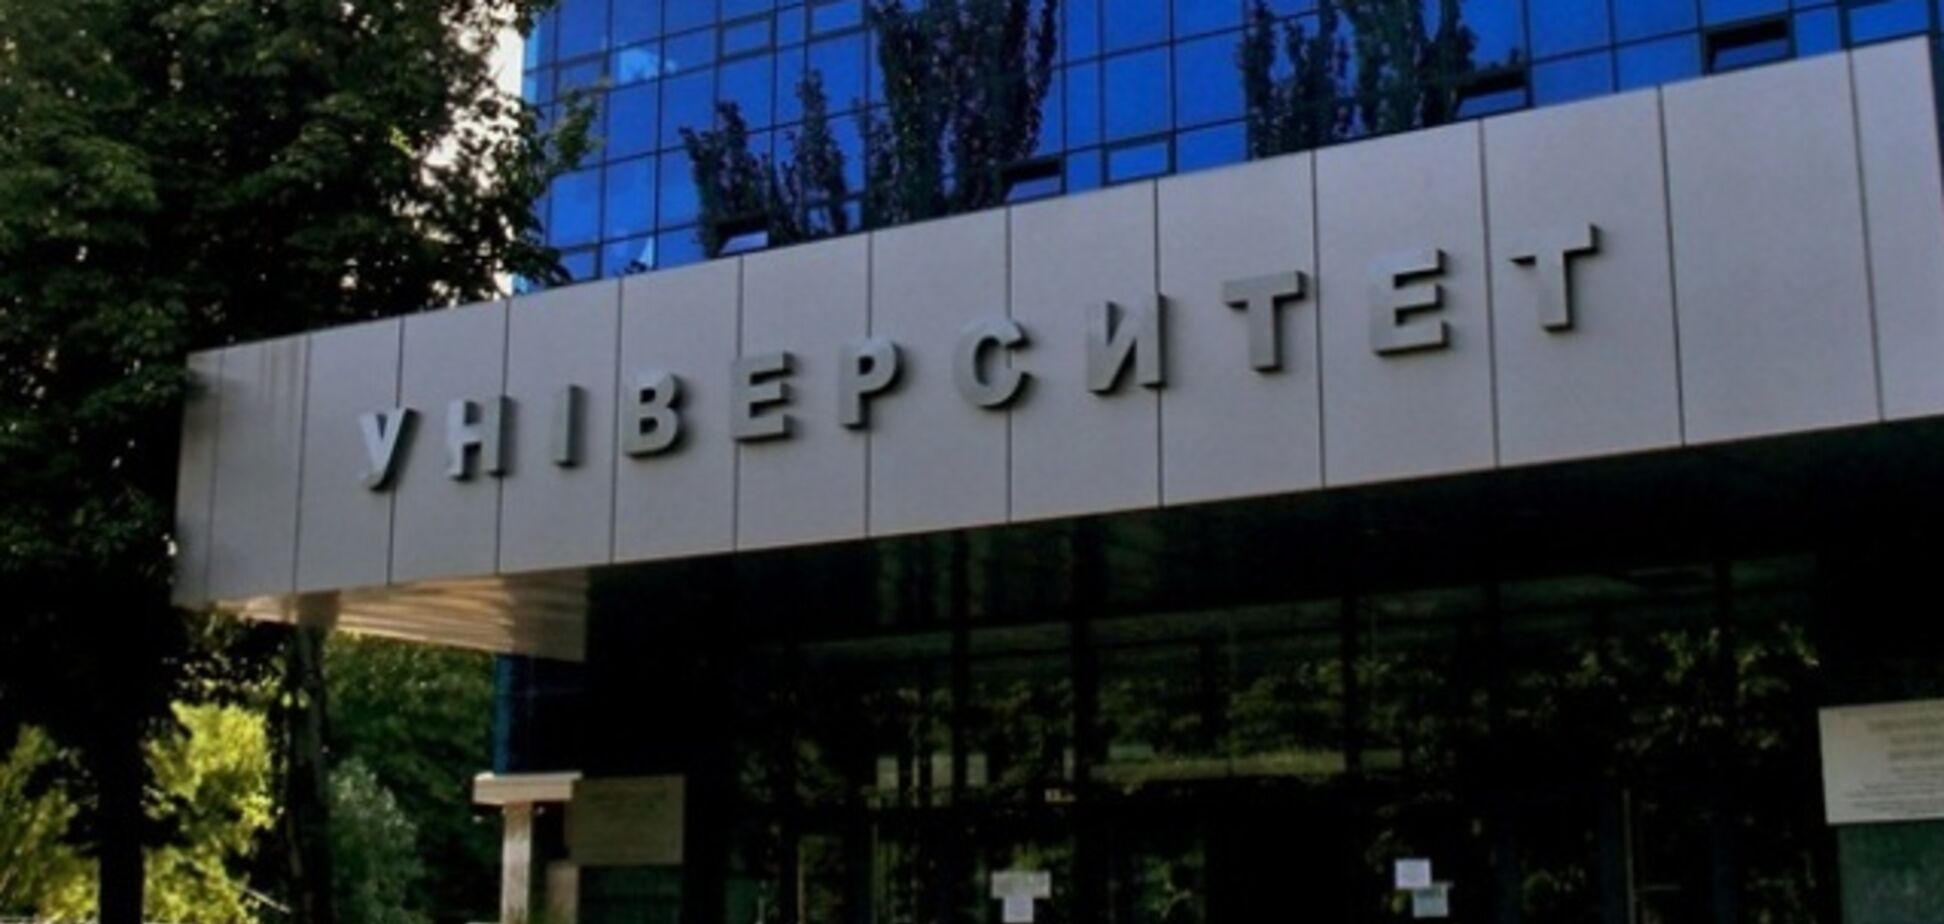 Ректора Днепровского университета обвинили в заработке на студентах